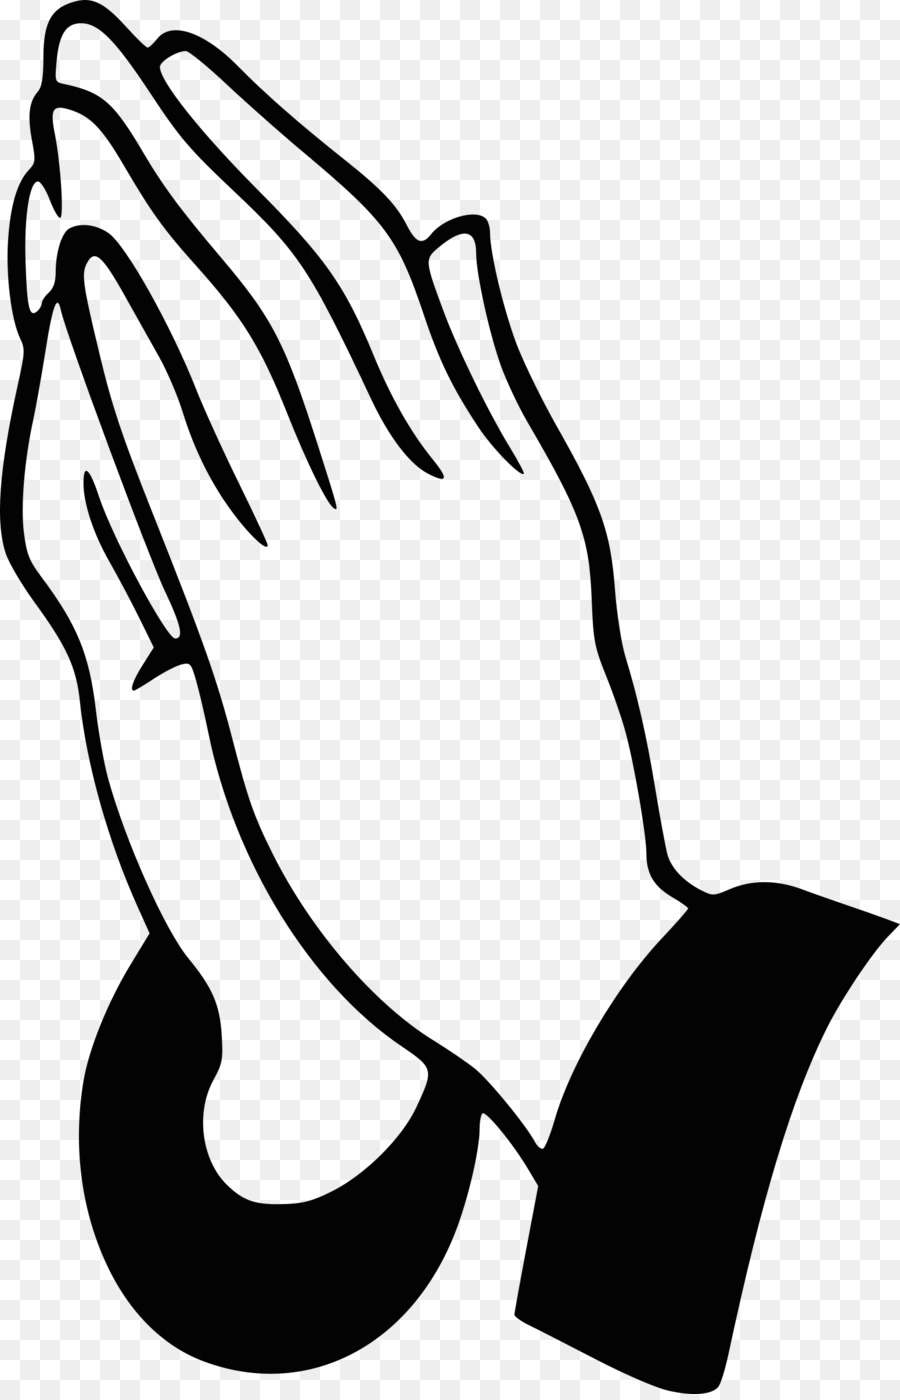 Praying Hands Prayer Clip art - prayer png download - 1550*2400 - Free Transparent Praying Hands png Download.